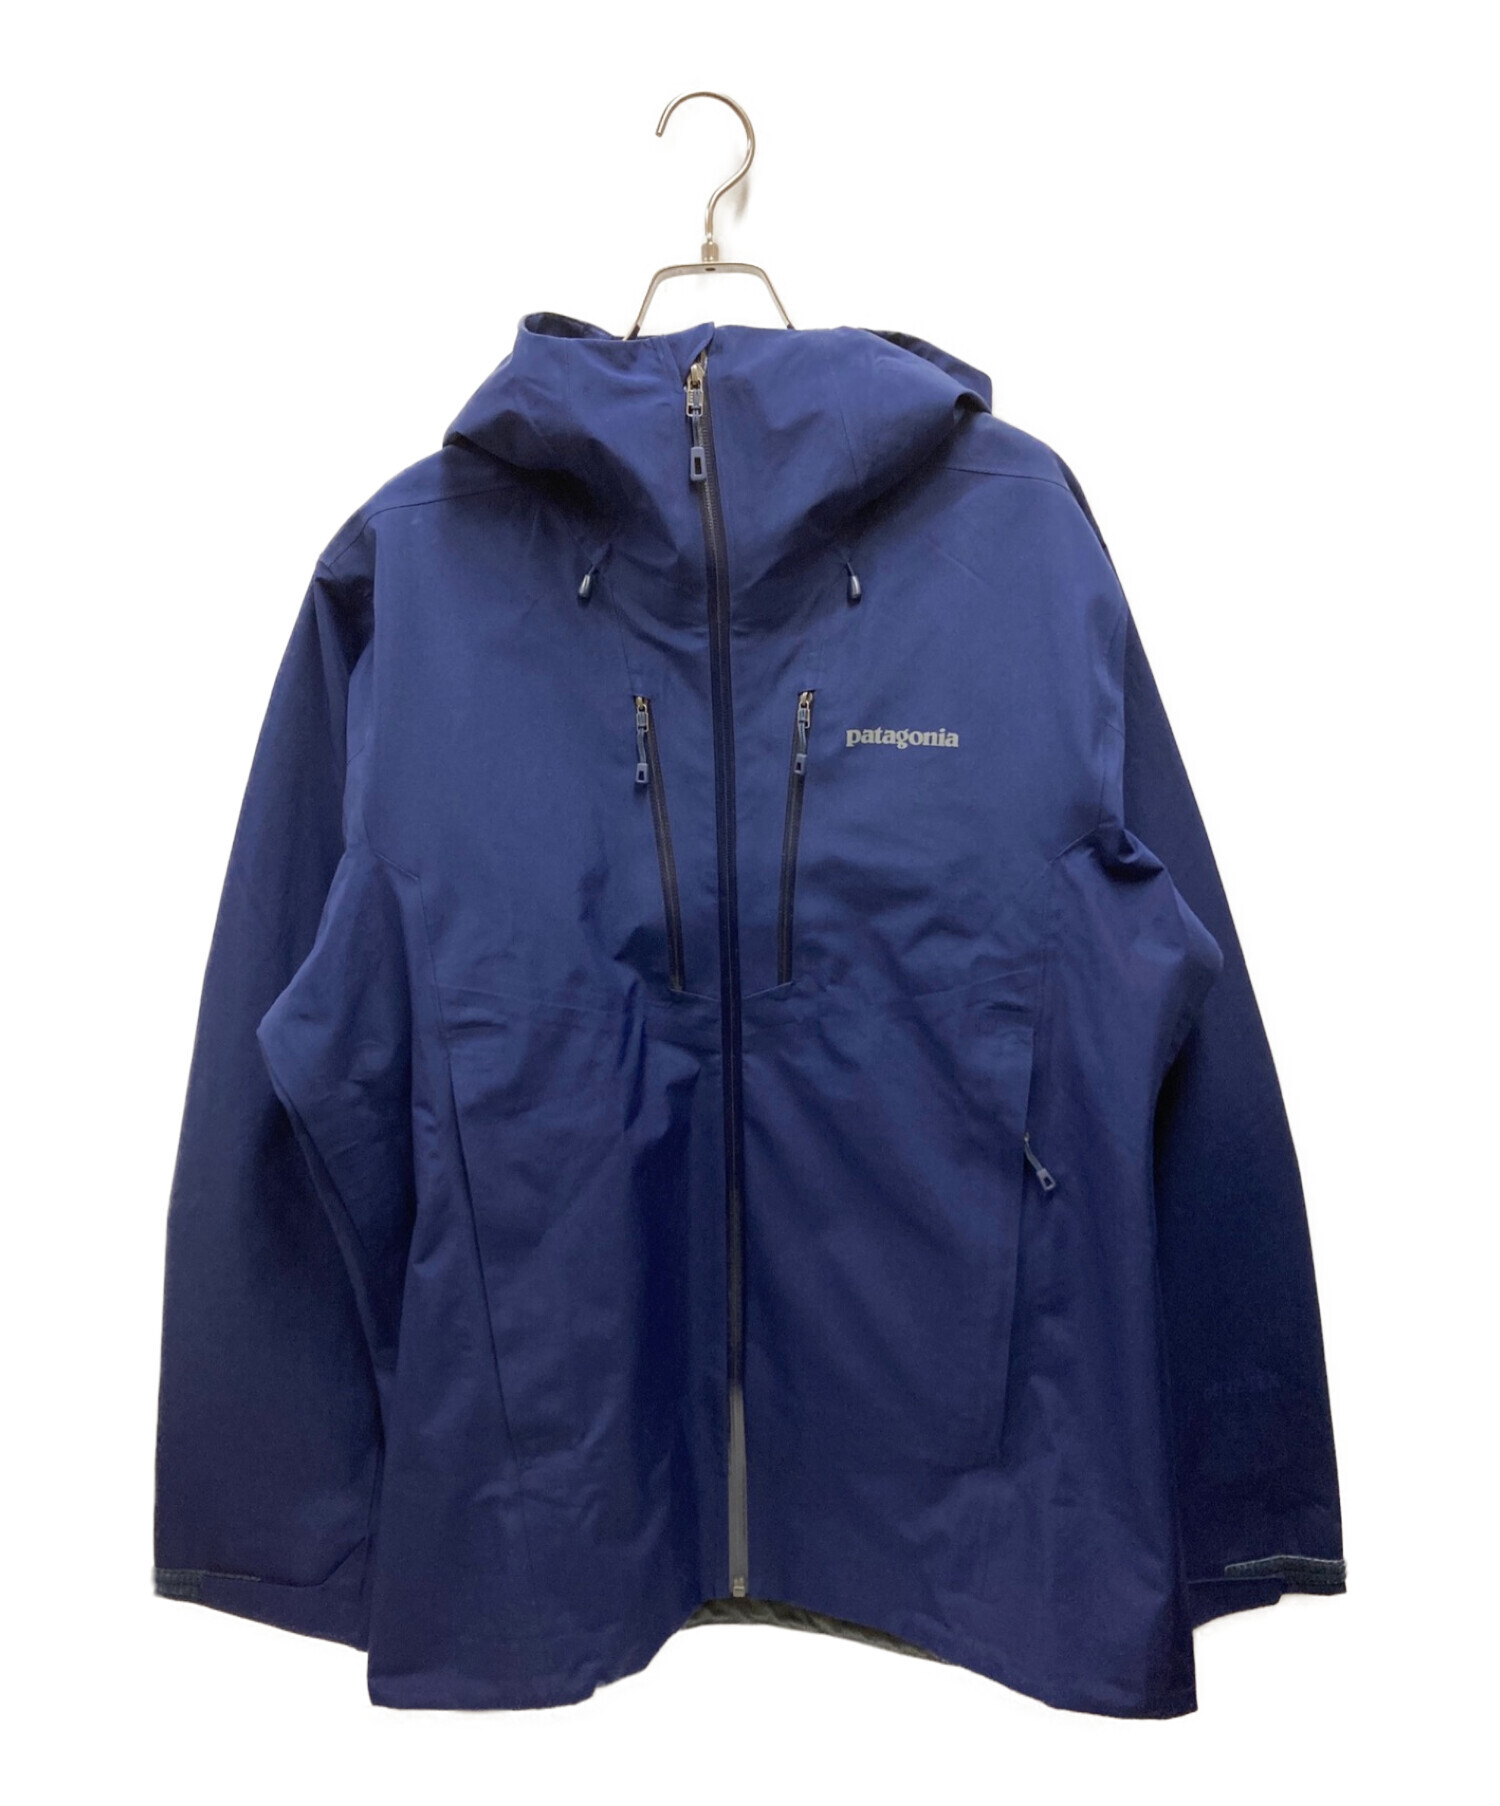 Patagonia (パタゴニア) トリオットジャケット ブルー サイズ:M